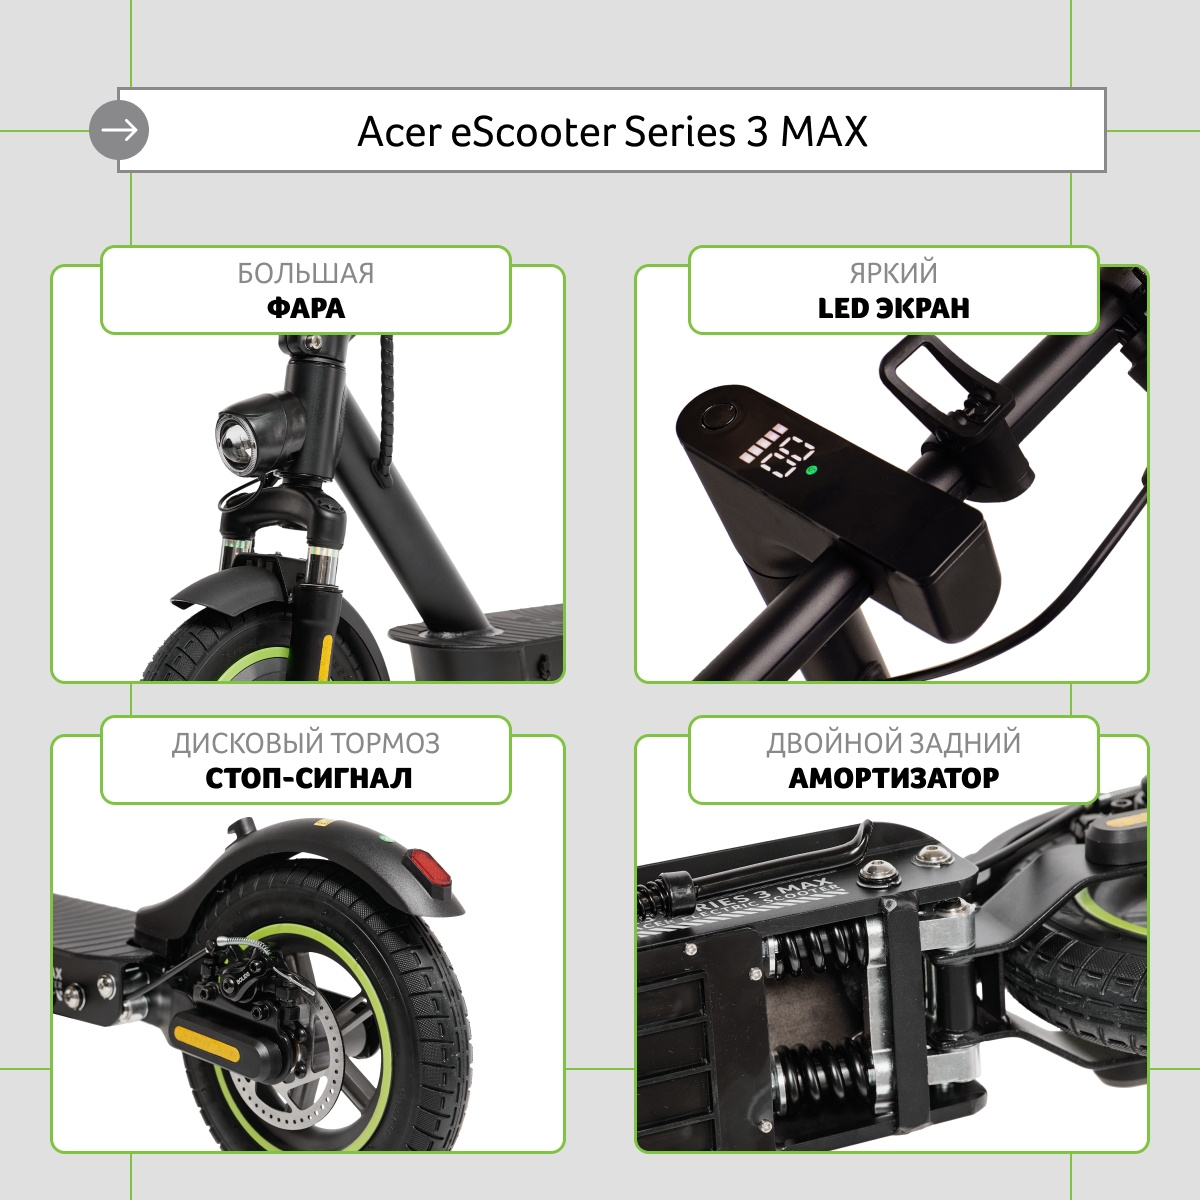 Электросамокат acer es series 3. Самокат Acer es Series 3. Aes203 электросамокат Acer. Acer Electric Scooter es Series 3 model. Электросамокат Acer aes001.